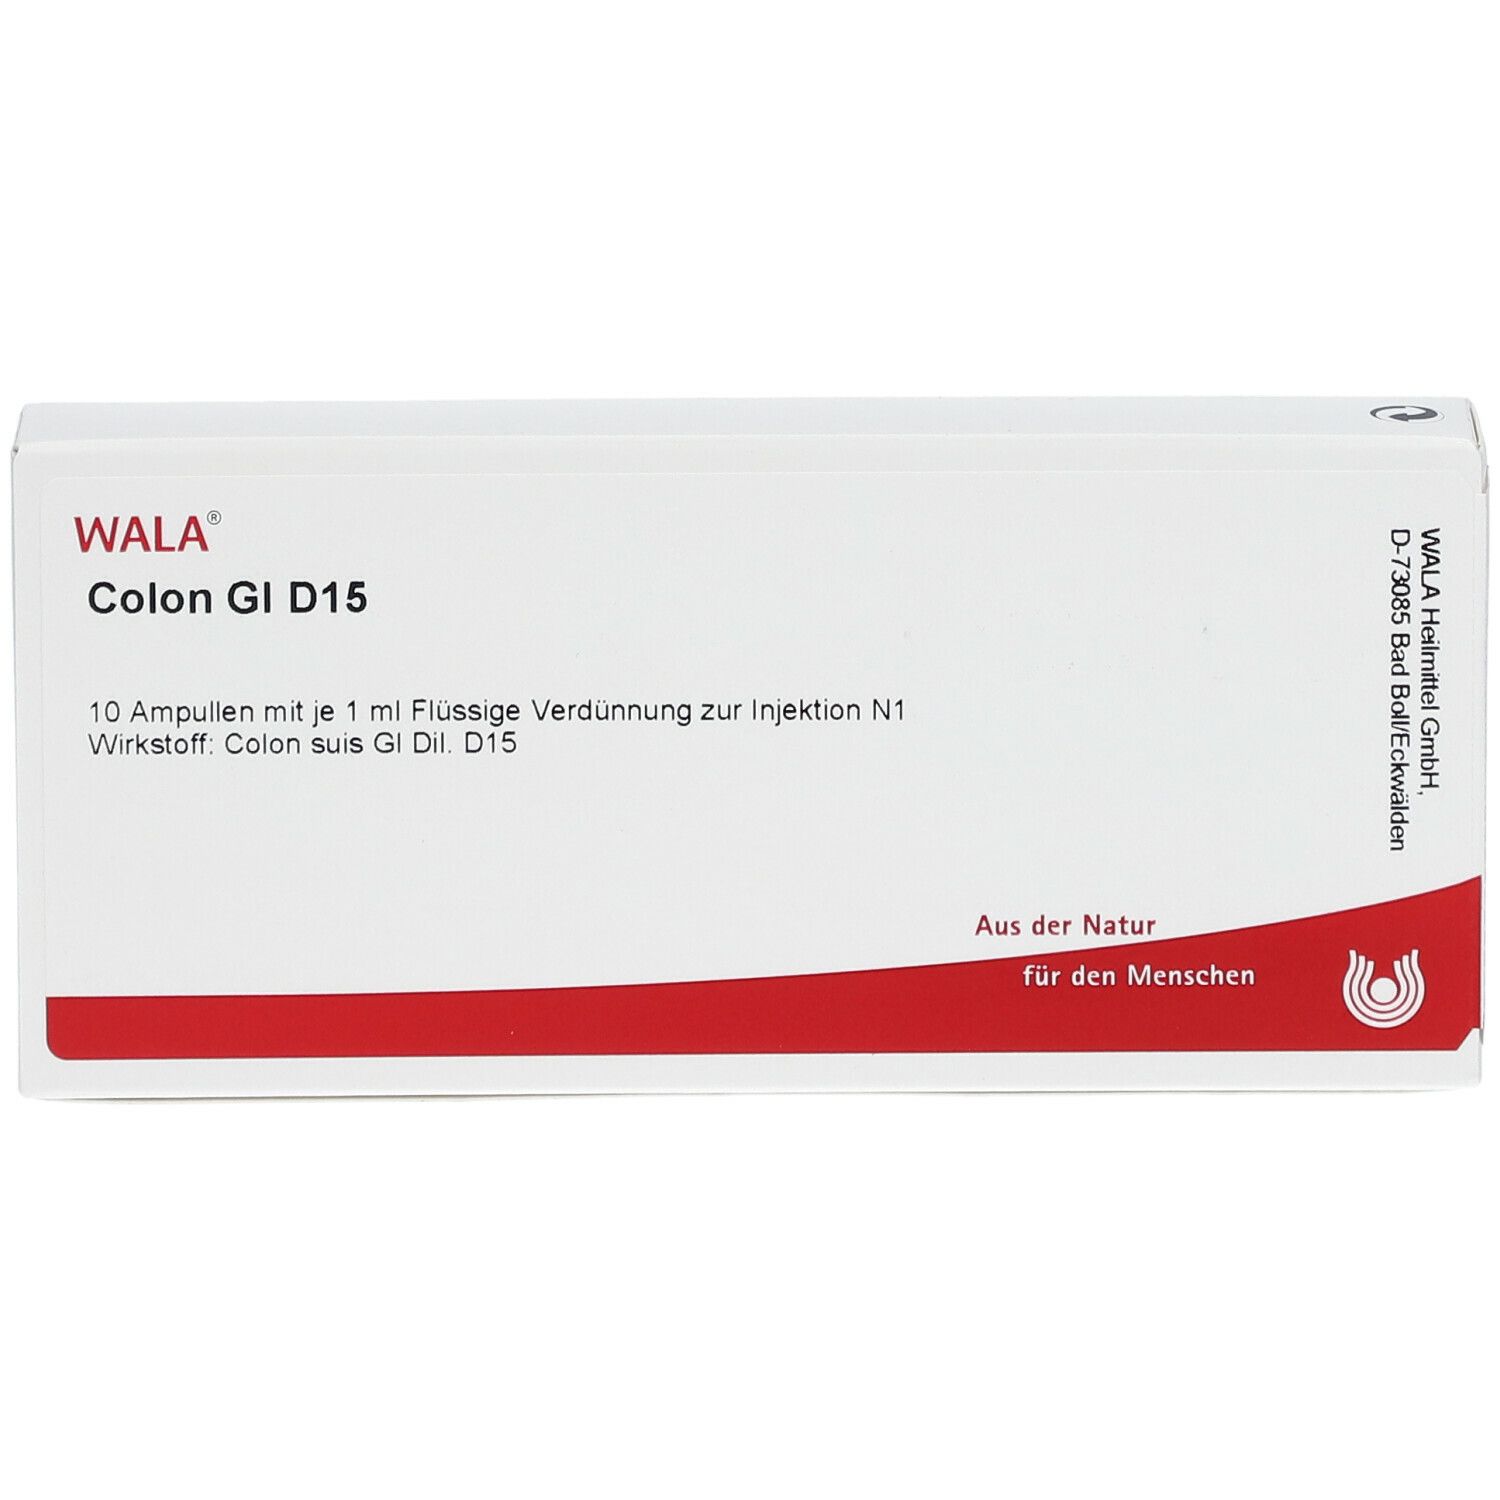 WALA® Colon Gl D 15 Ampullen